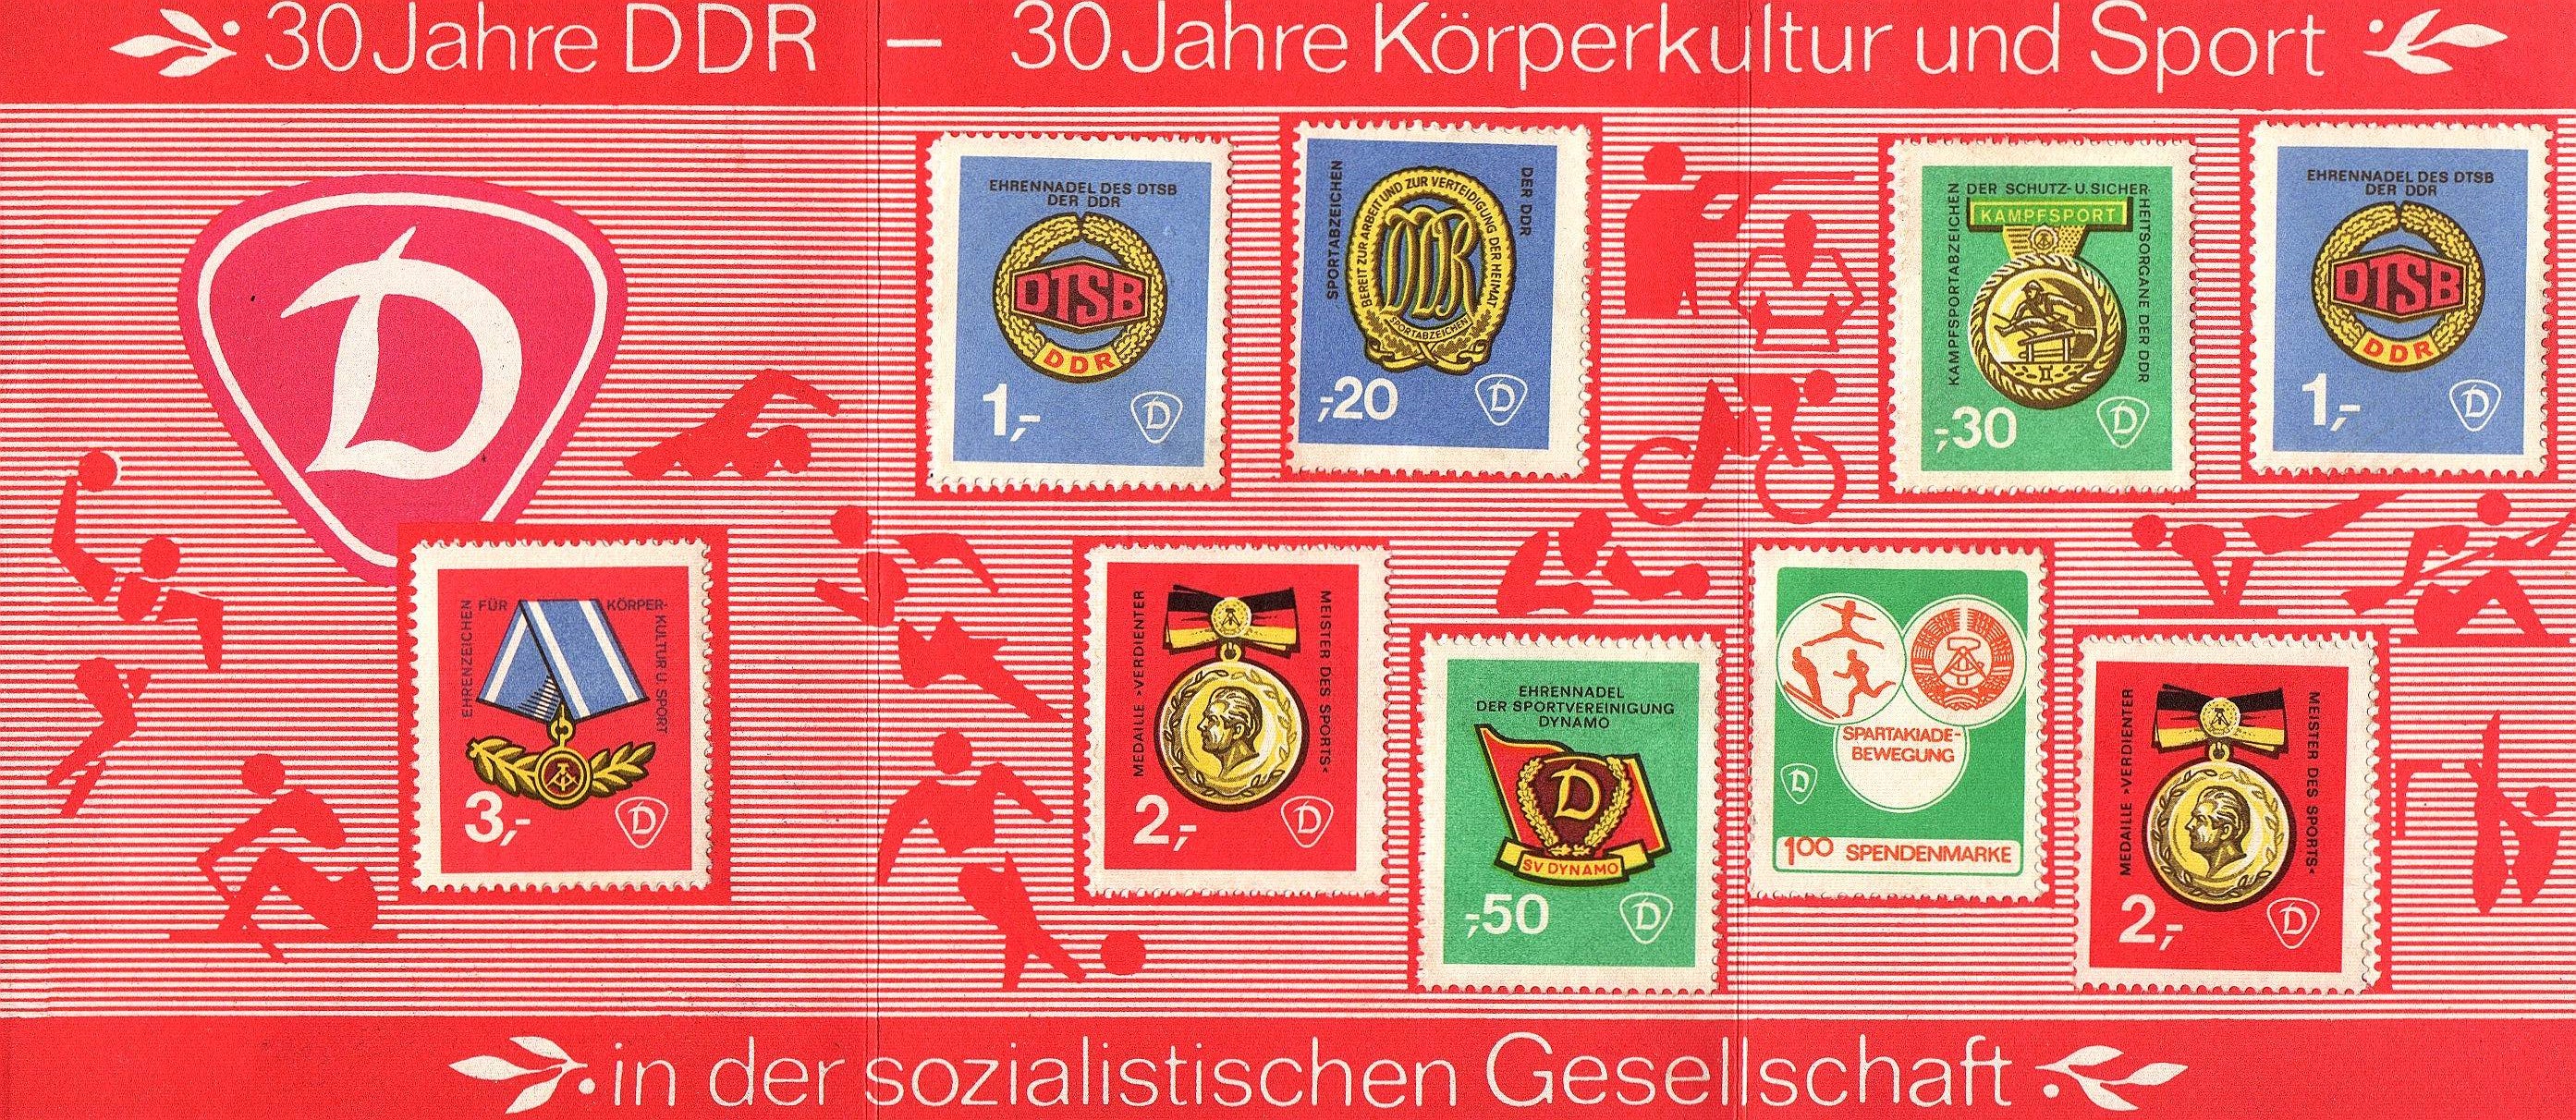 30 Jahre DDR 1949 bis 1979 Briefmarken Heft Sammlung Körperkultur und Sport